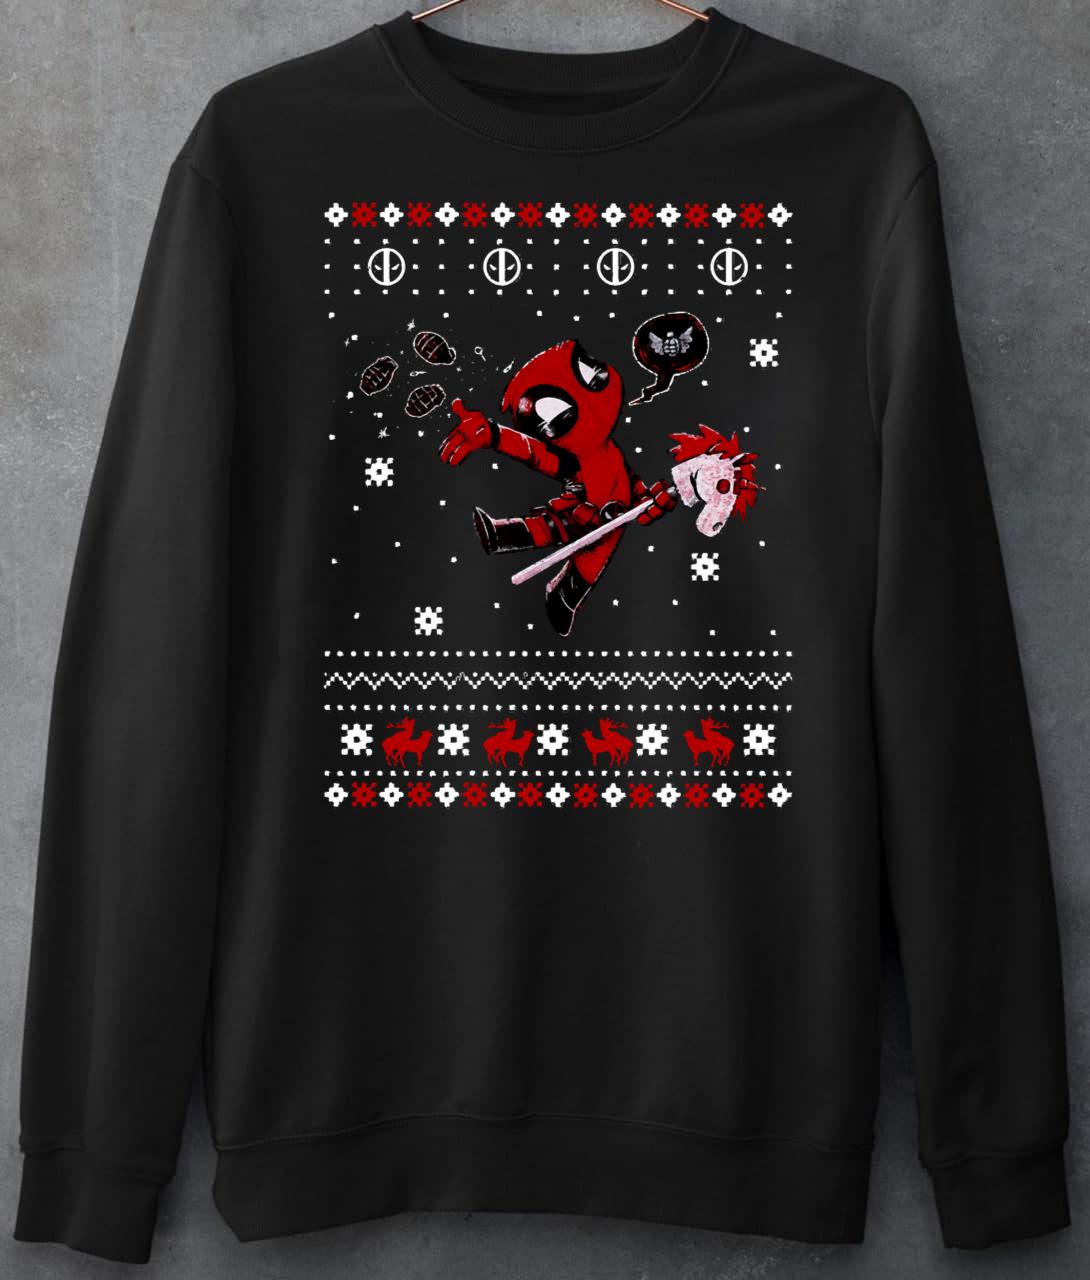 Deadpool Christmas Ugly T-Shirt